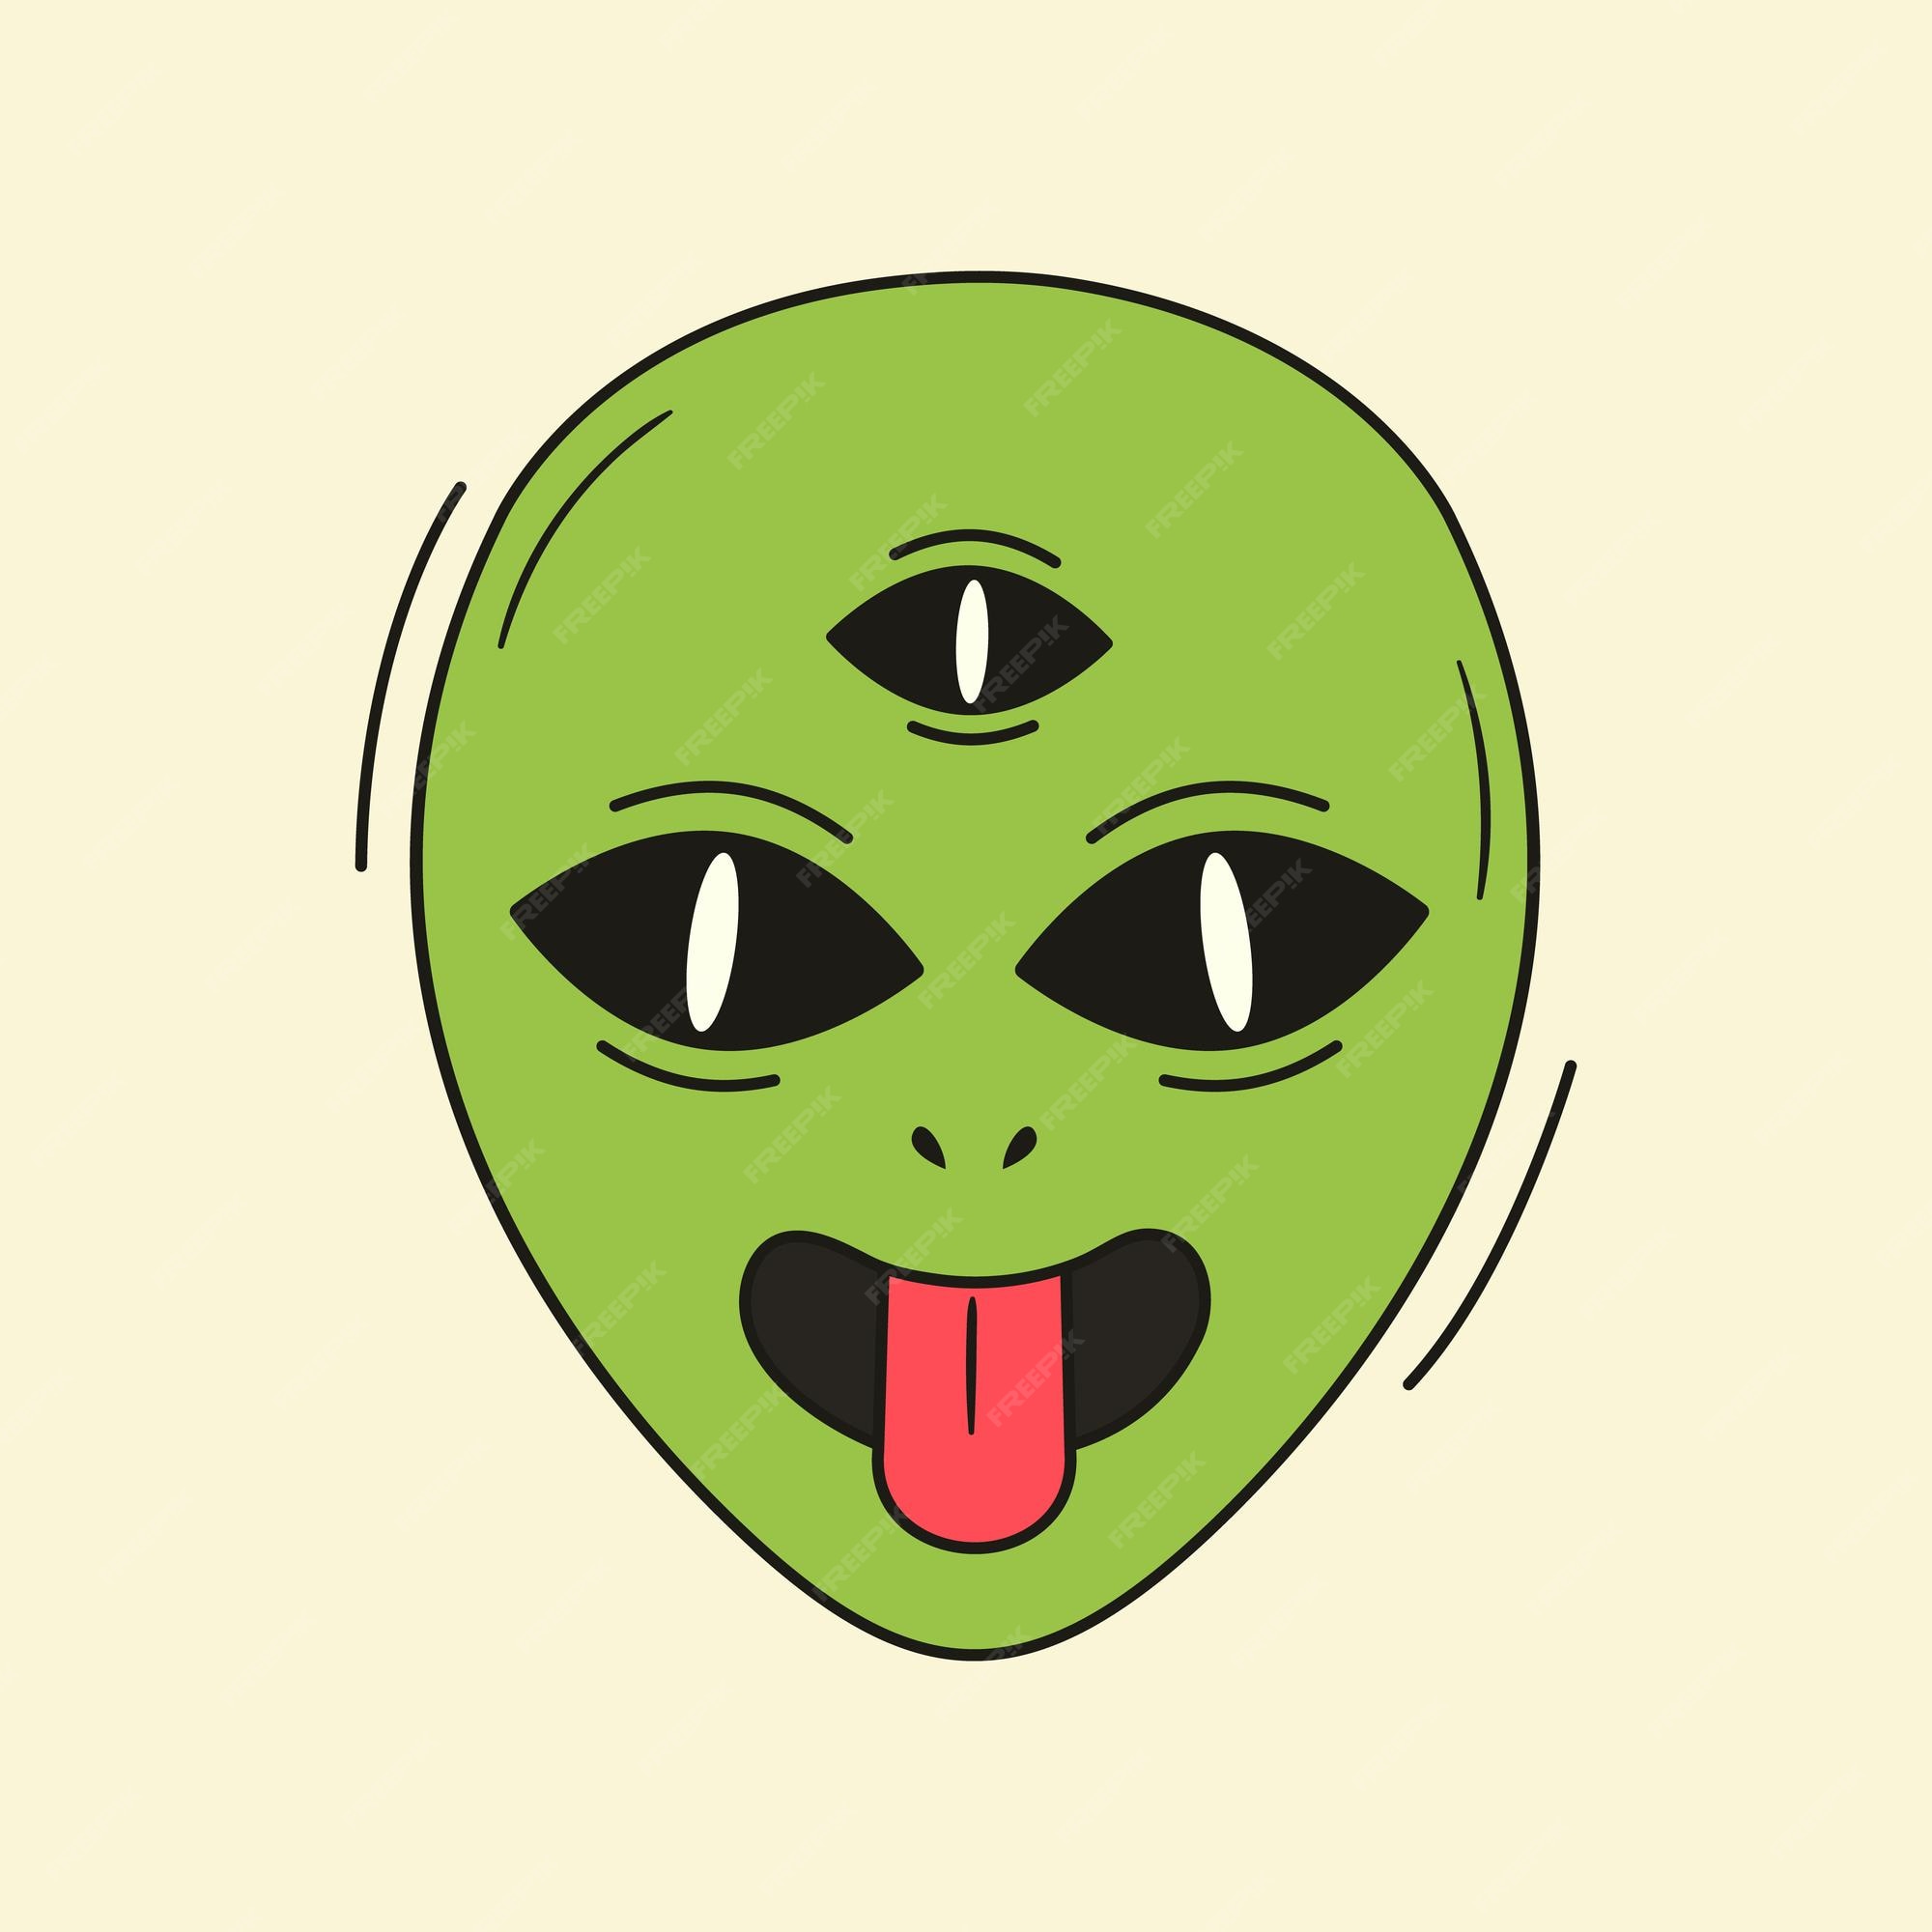 Alien psicodélico engraçado com rosto de sorriso derretidologotipo de  ilustração de personagem de desenho animado em vetorsorriso rosto groovy  alienígena verde meltacidtechnotrippy print para camiseta conceito de  cartão-postal